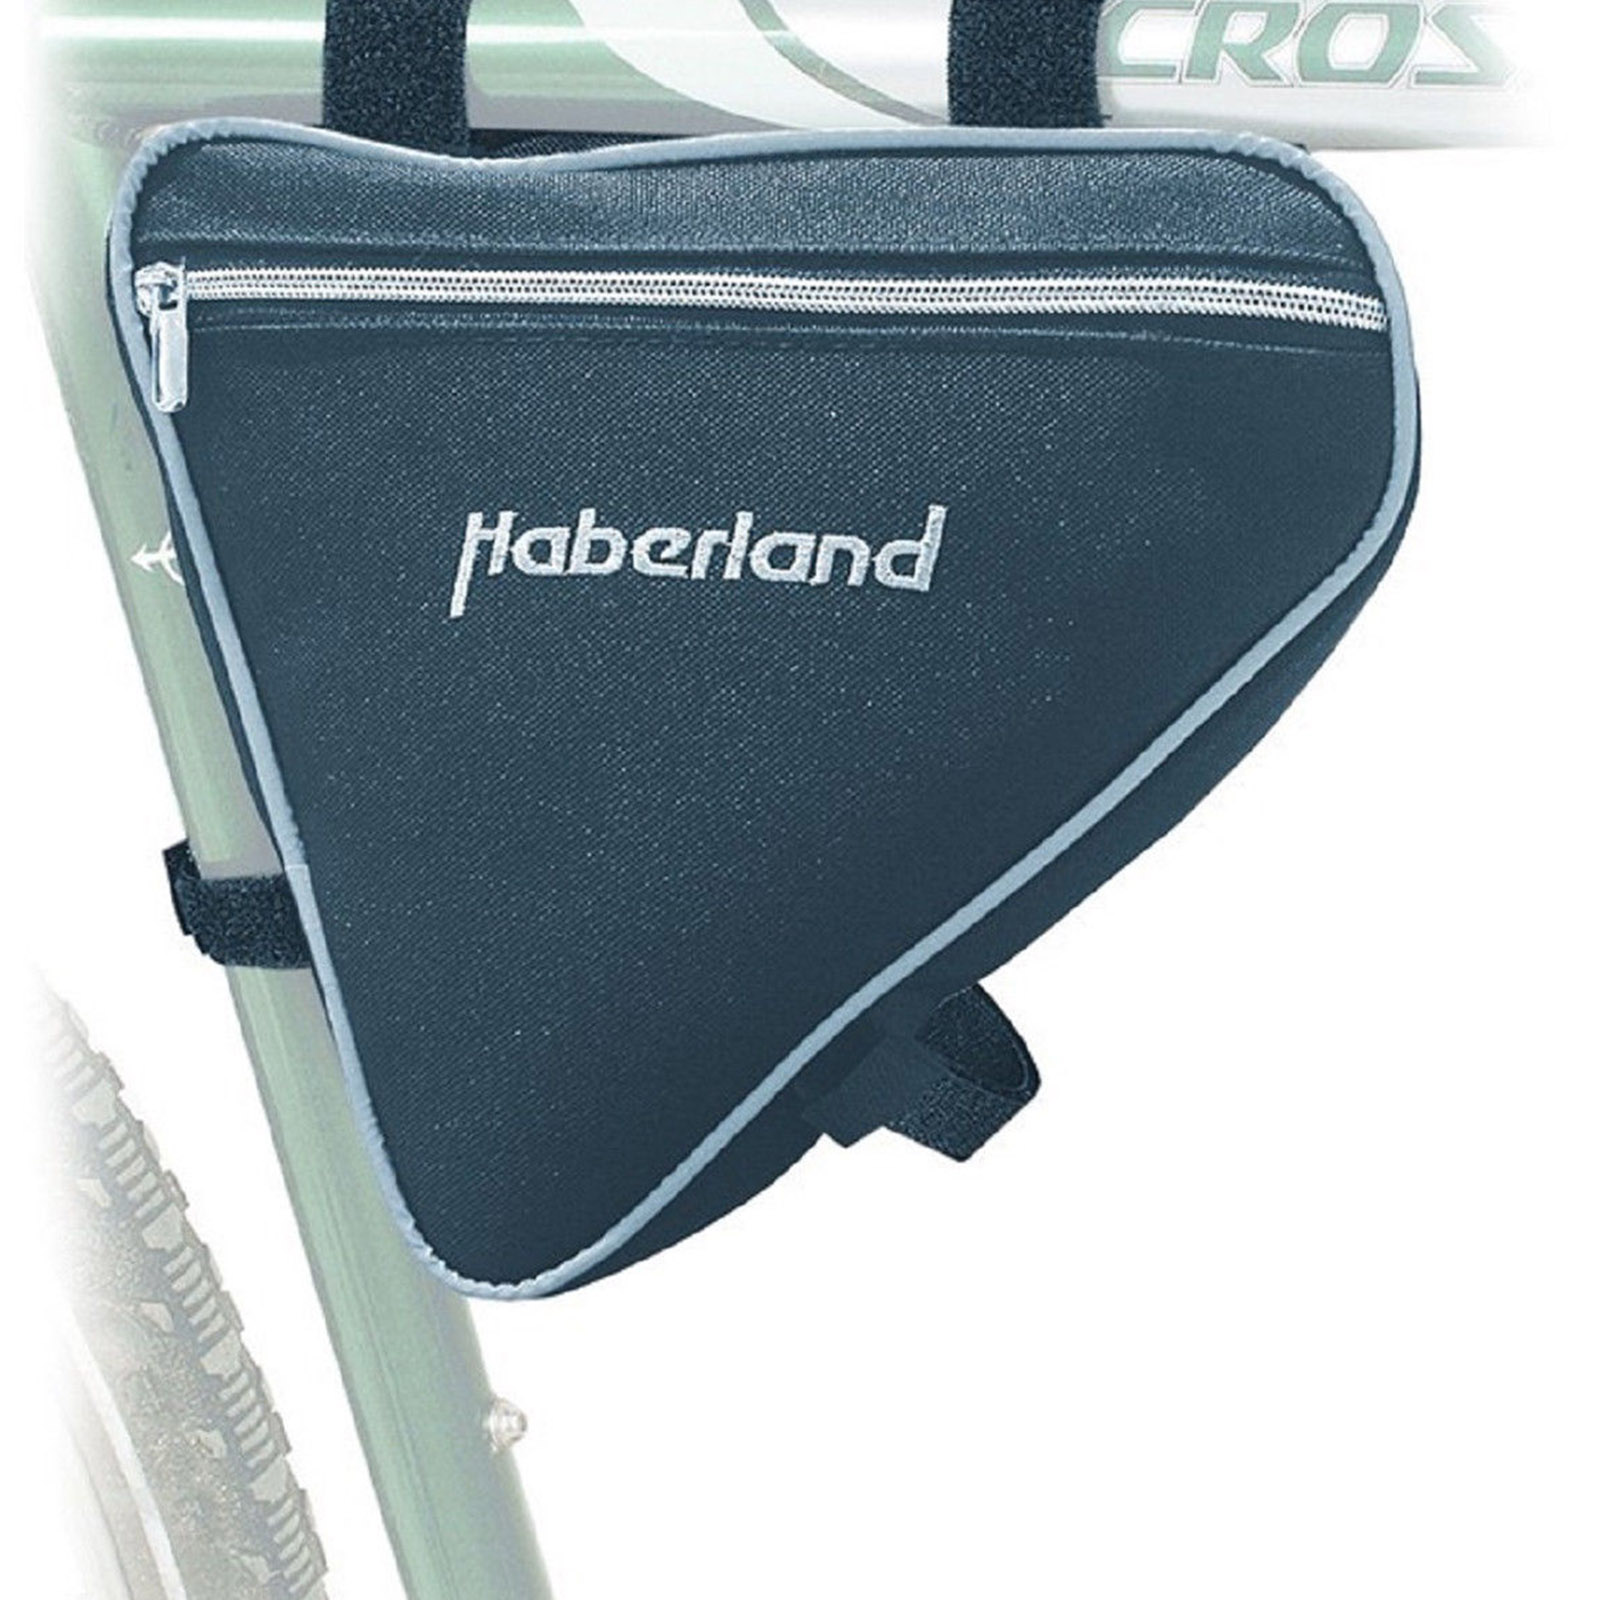 Haberland Rahmentasche klein  2ltr. schwarz